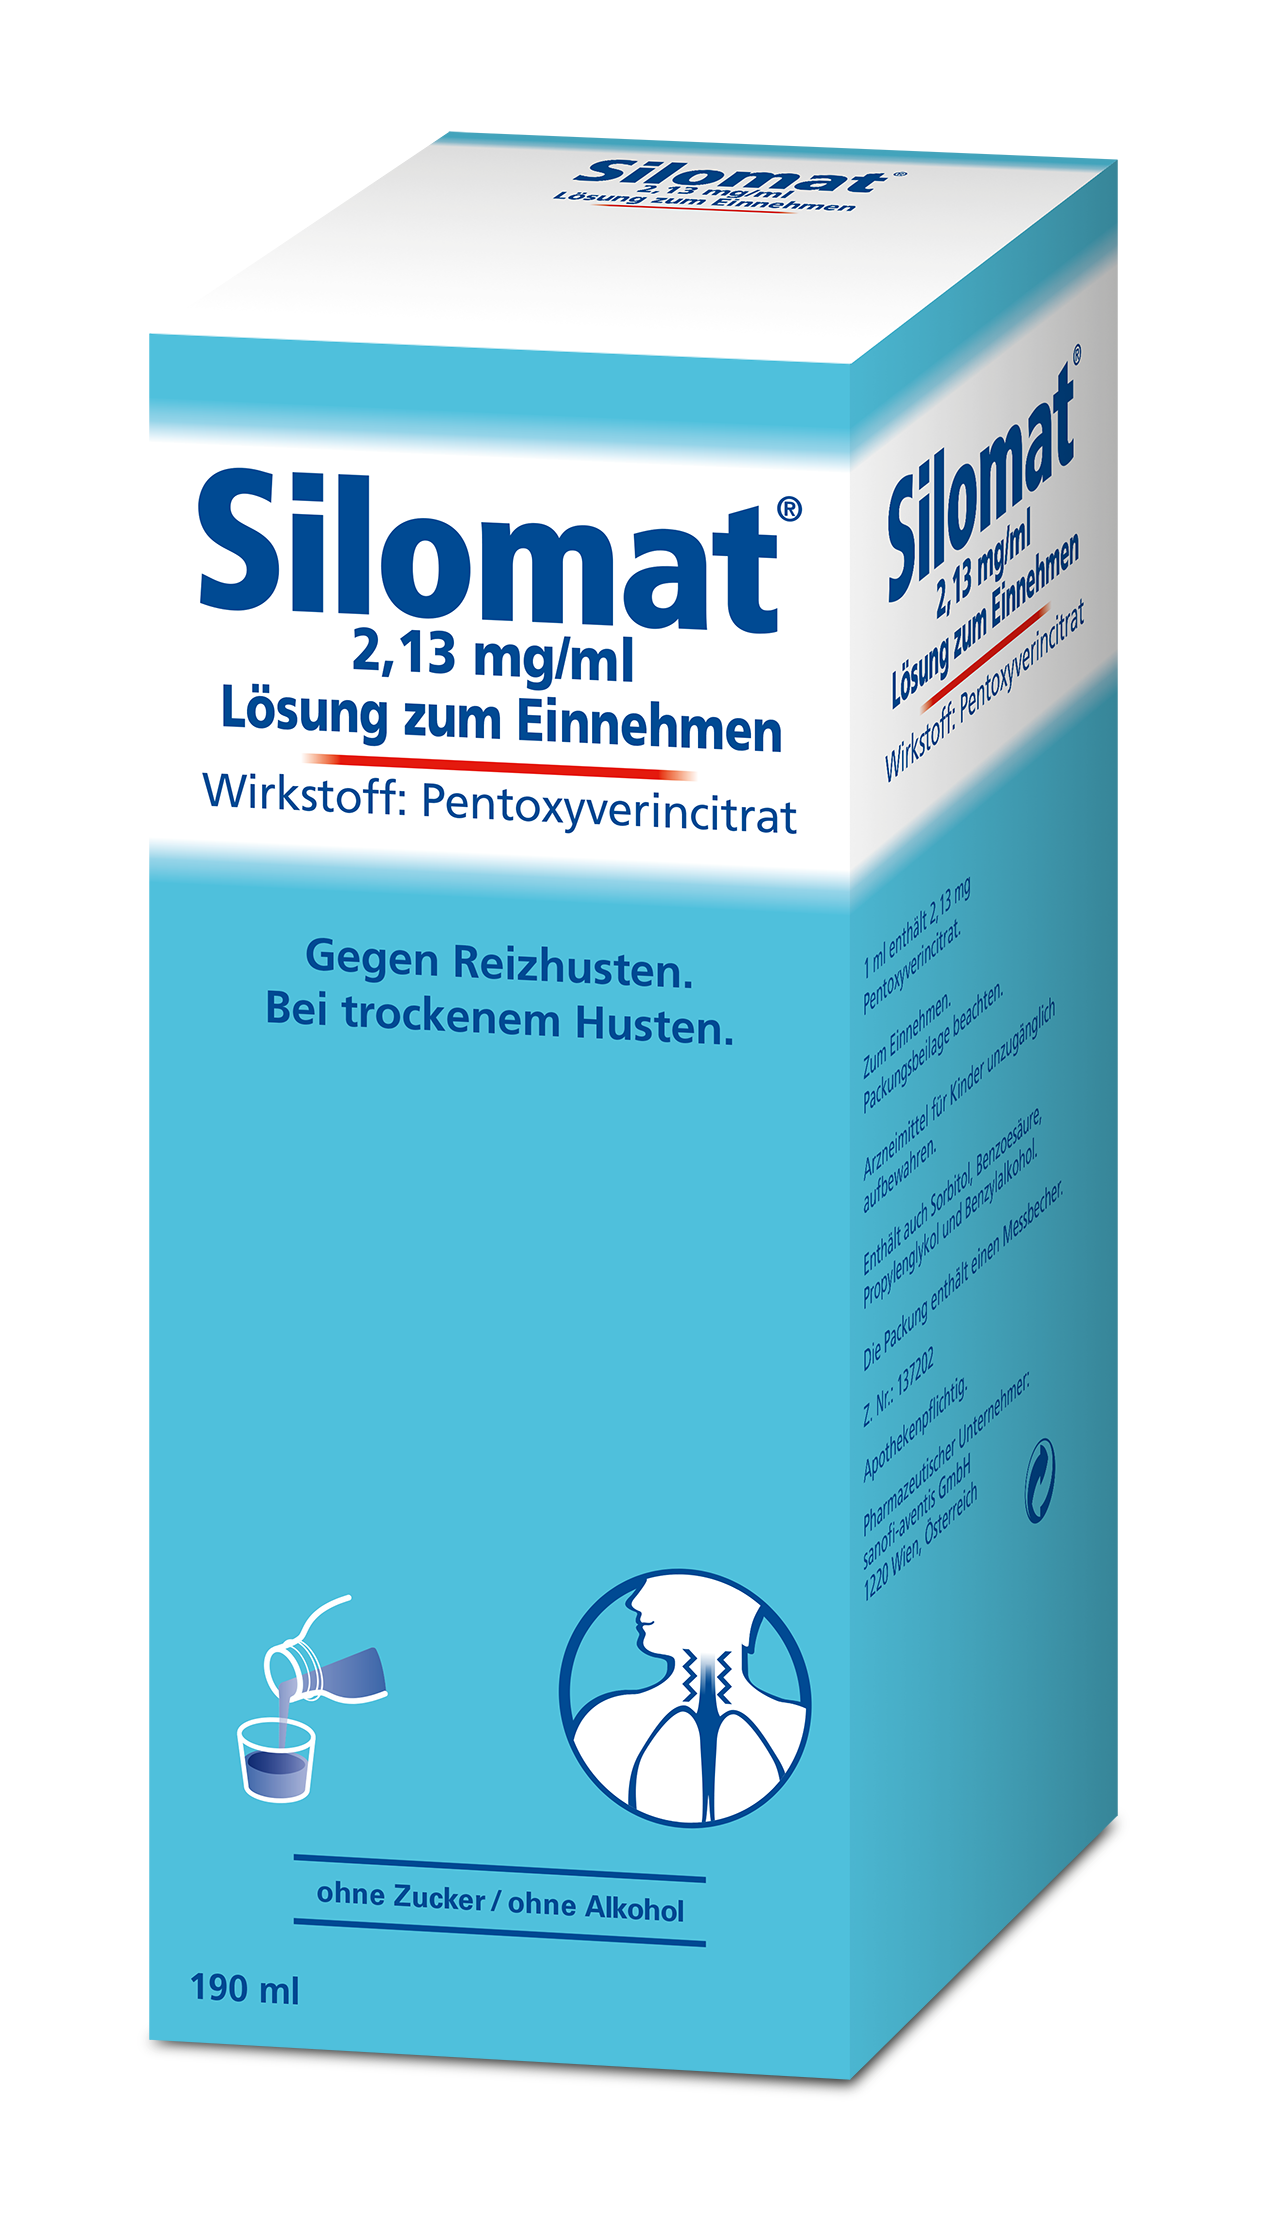 Mucomat Reizhusten 2,13 mg/ml - Lösung zum Einnehmen